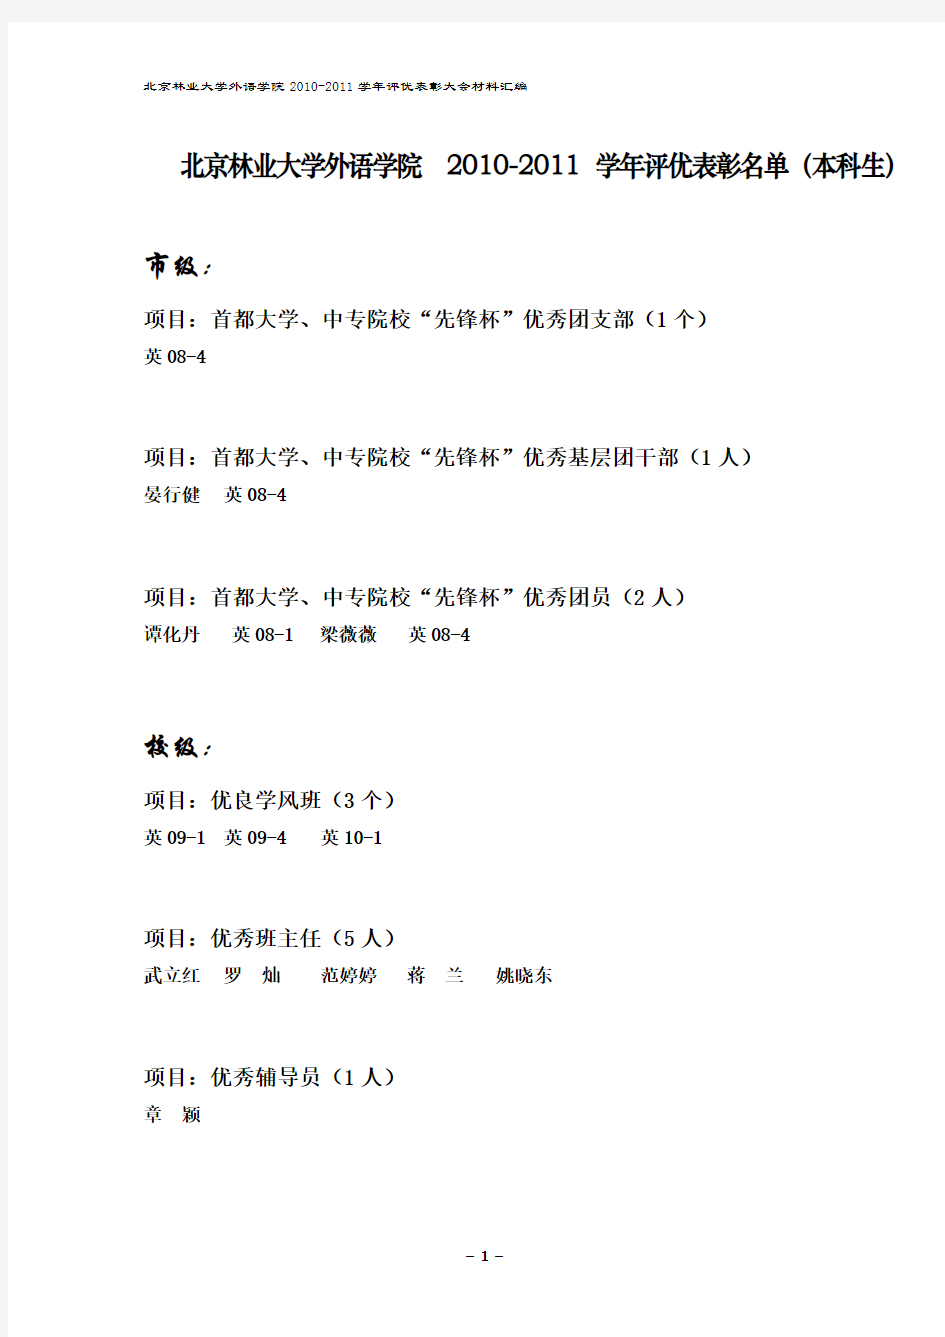 北京林业大学外语学院2010-2011学年评优表彰名单(本科生)